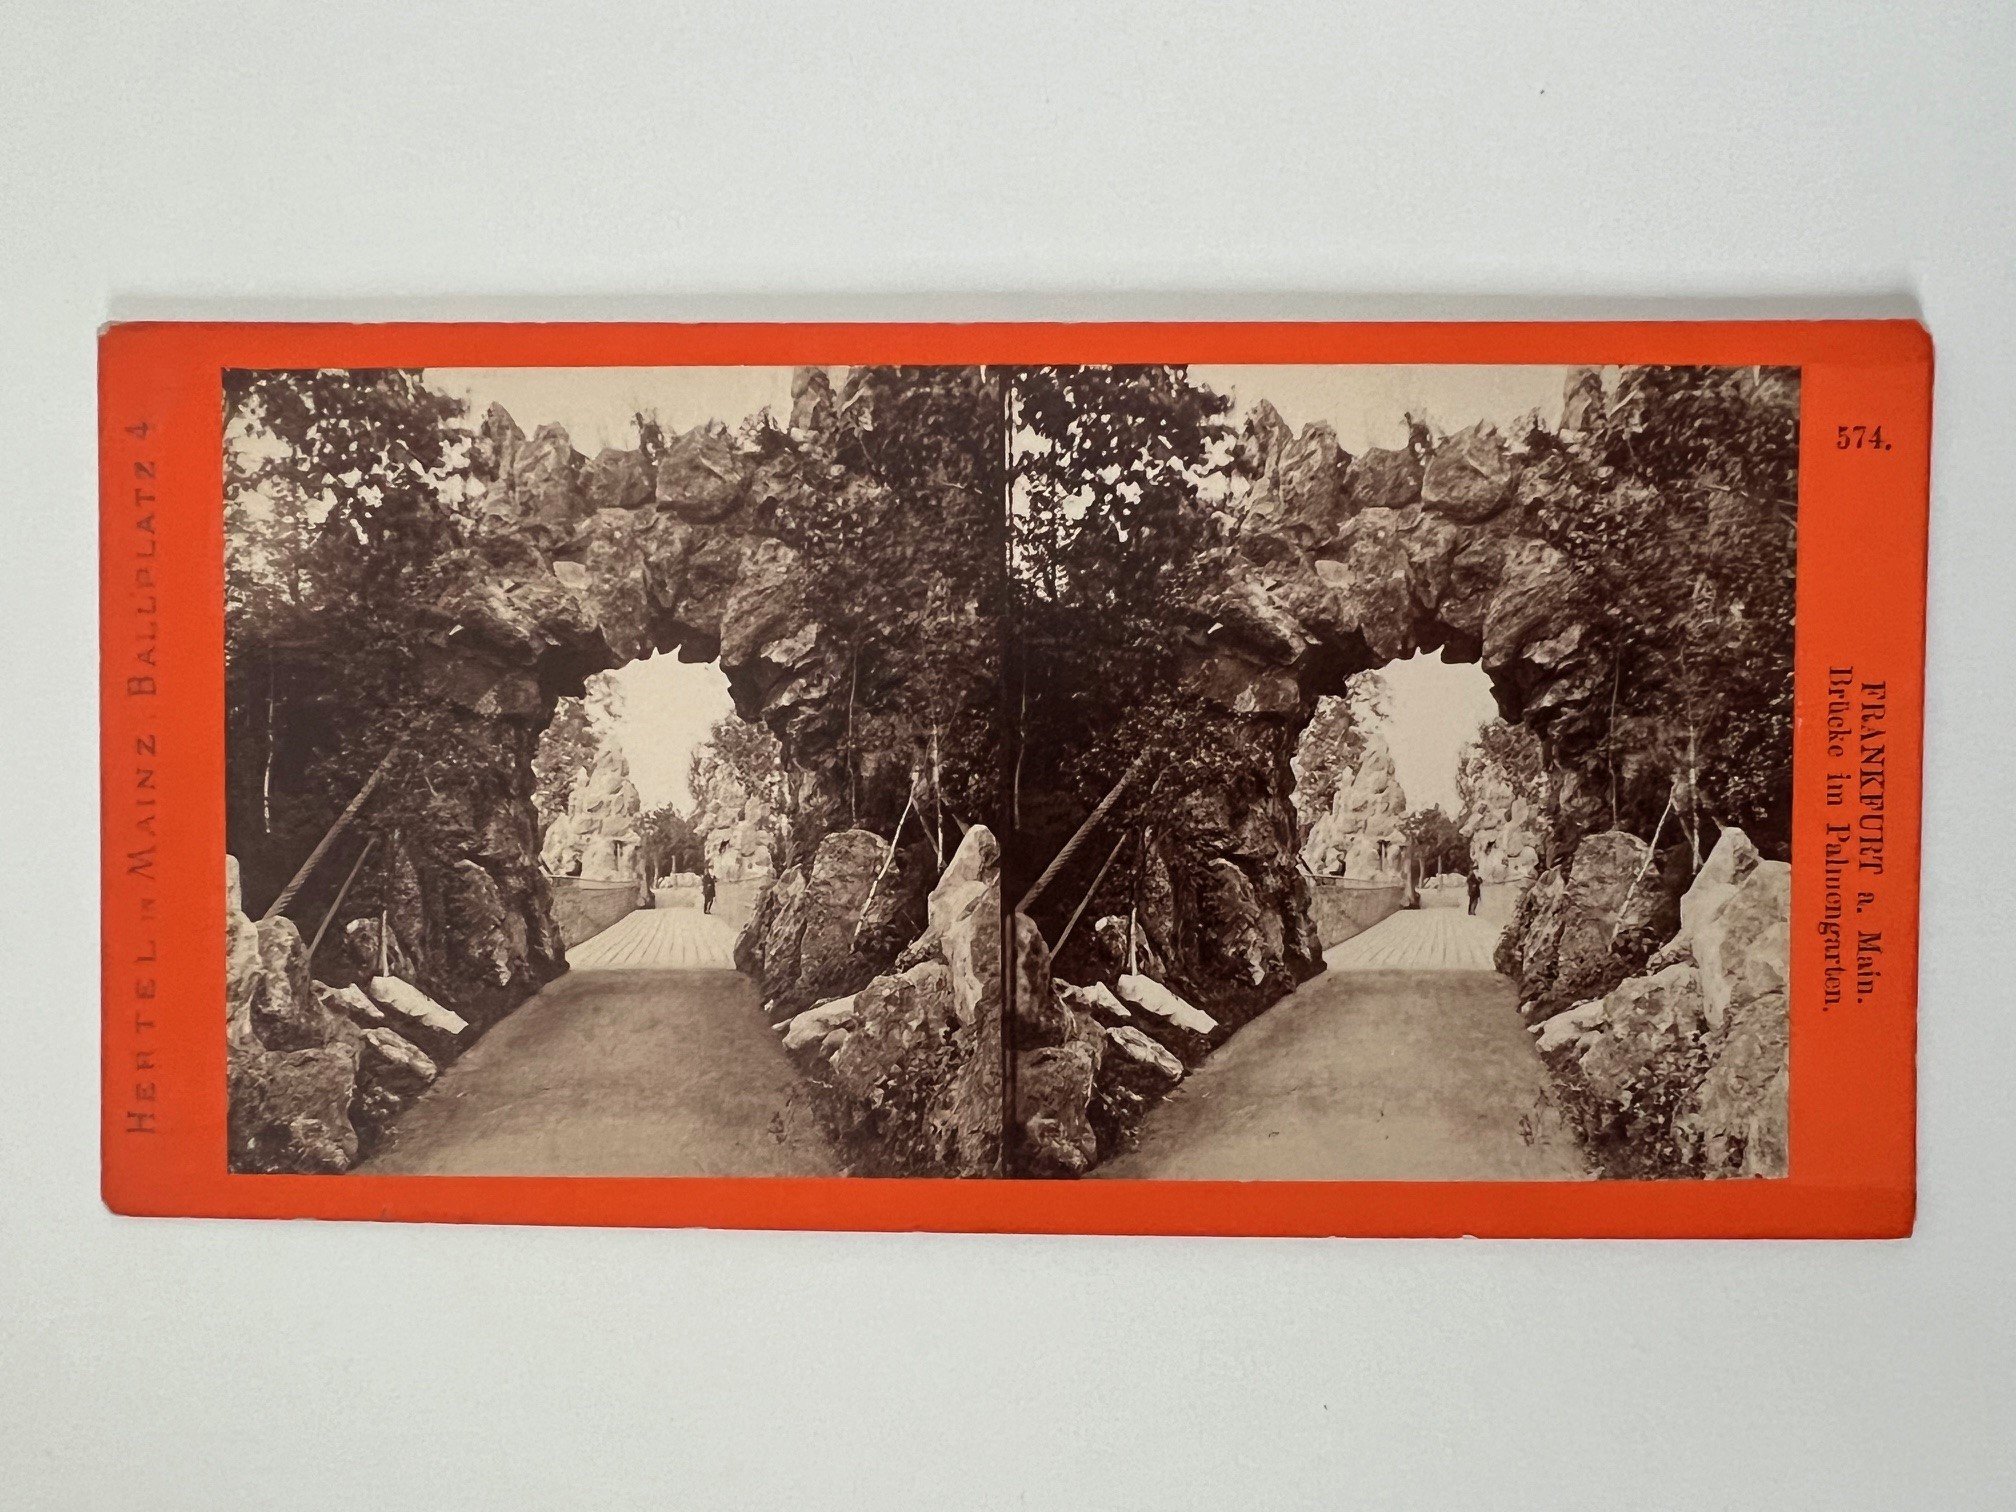 Stereobild, Carl Hertel, Frankfurt, Nr. 574, Brücke im Palmengarten, ca. 1880. (Taunus-Rhein-Main - Regionalgeschichtliche Sammlung Dr. Stefan Naas CC BY-NC-SA)